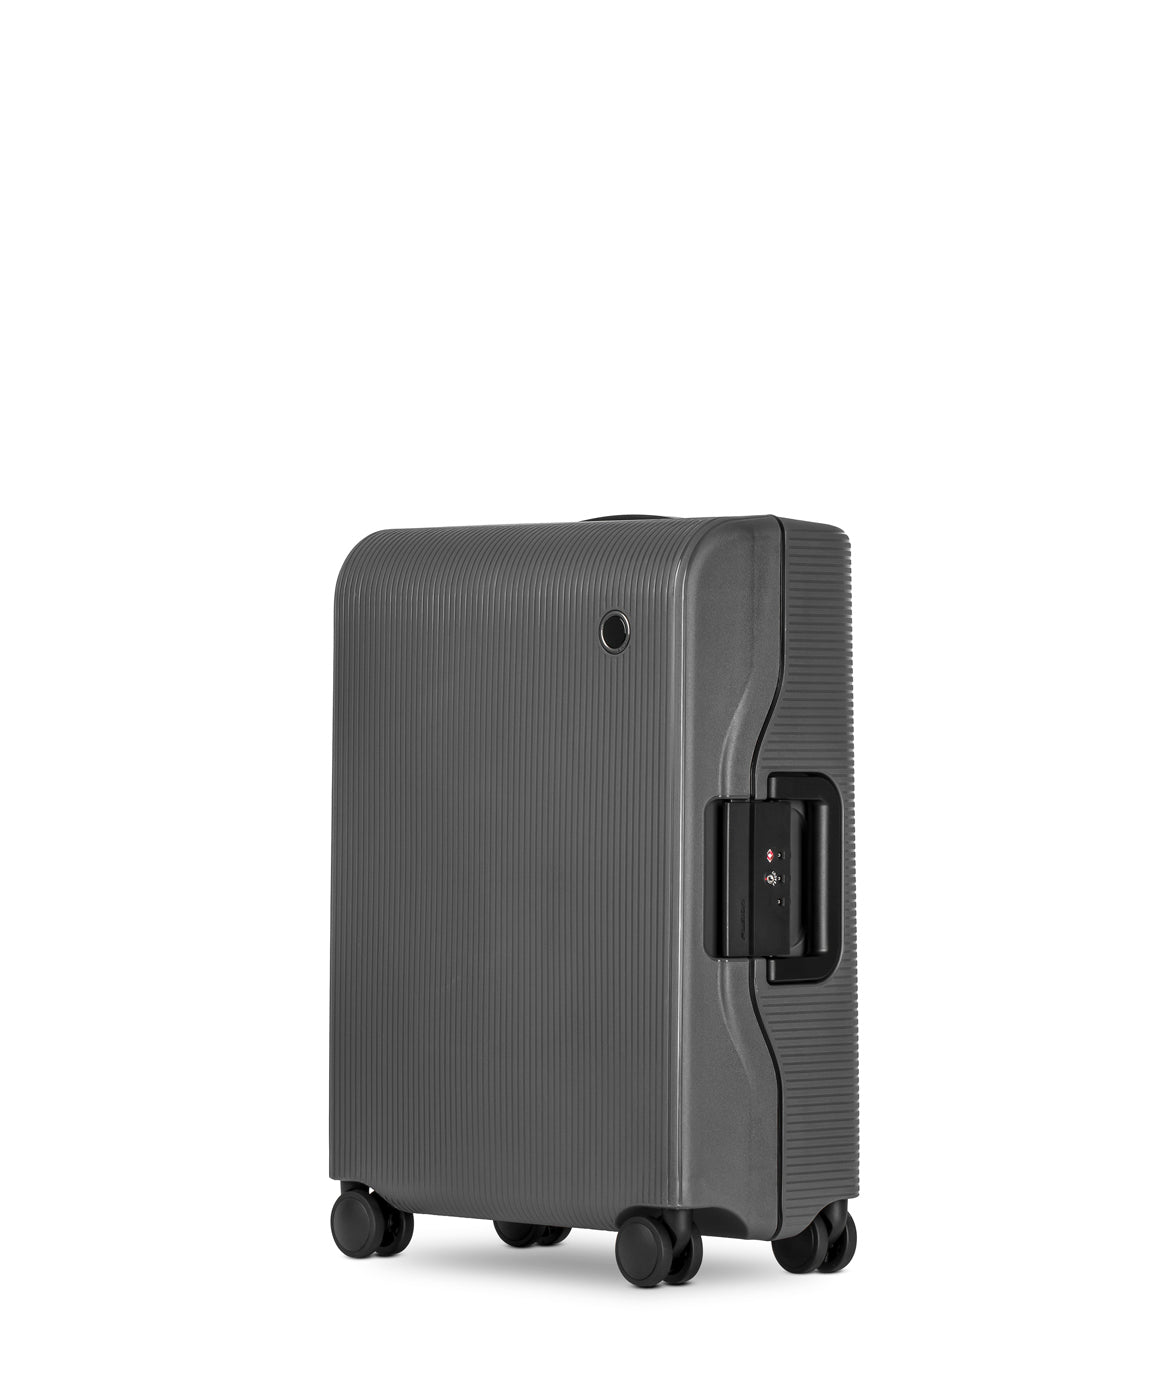 Echolac Fusion Koffer, Small 55 cm, Dunkelgrau seitlich